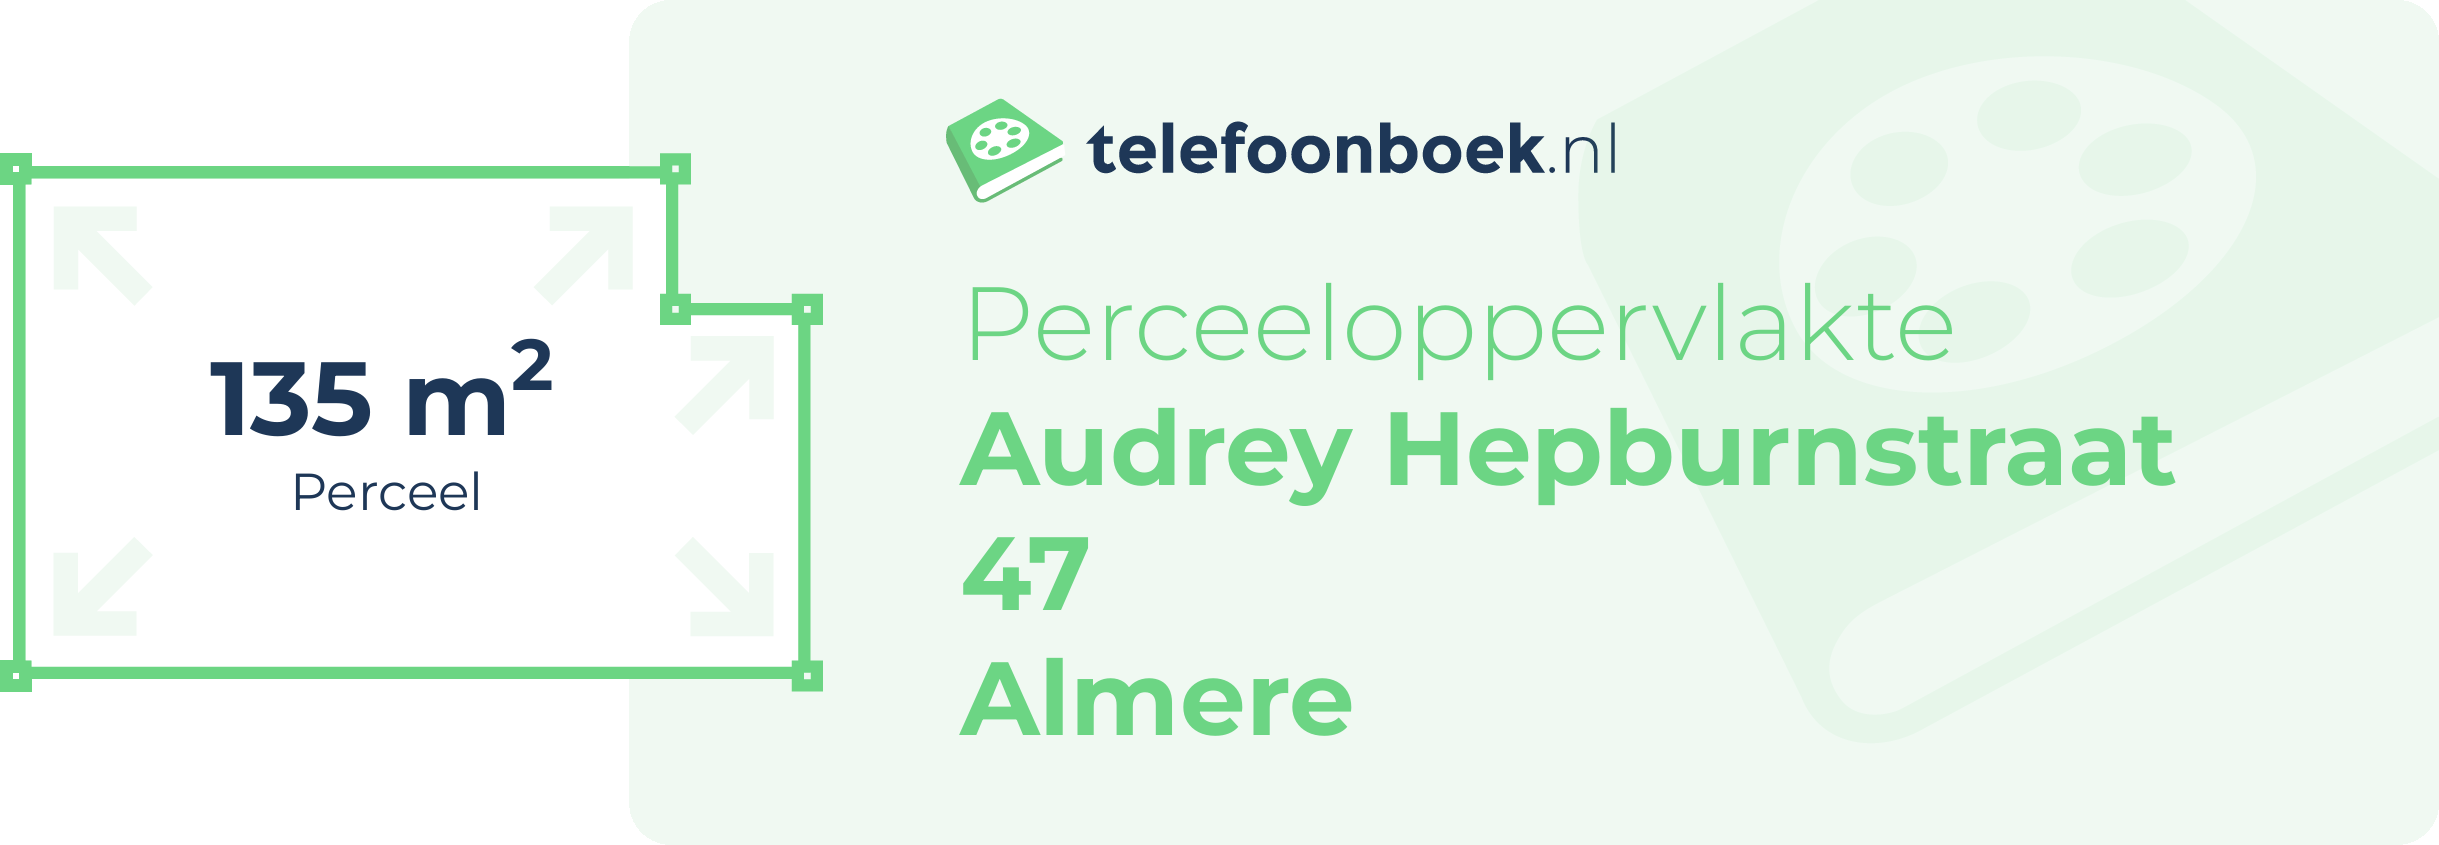 Perceeloppervlakte Audrey Hepburnstraat 47 Almere